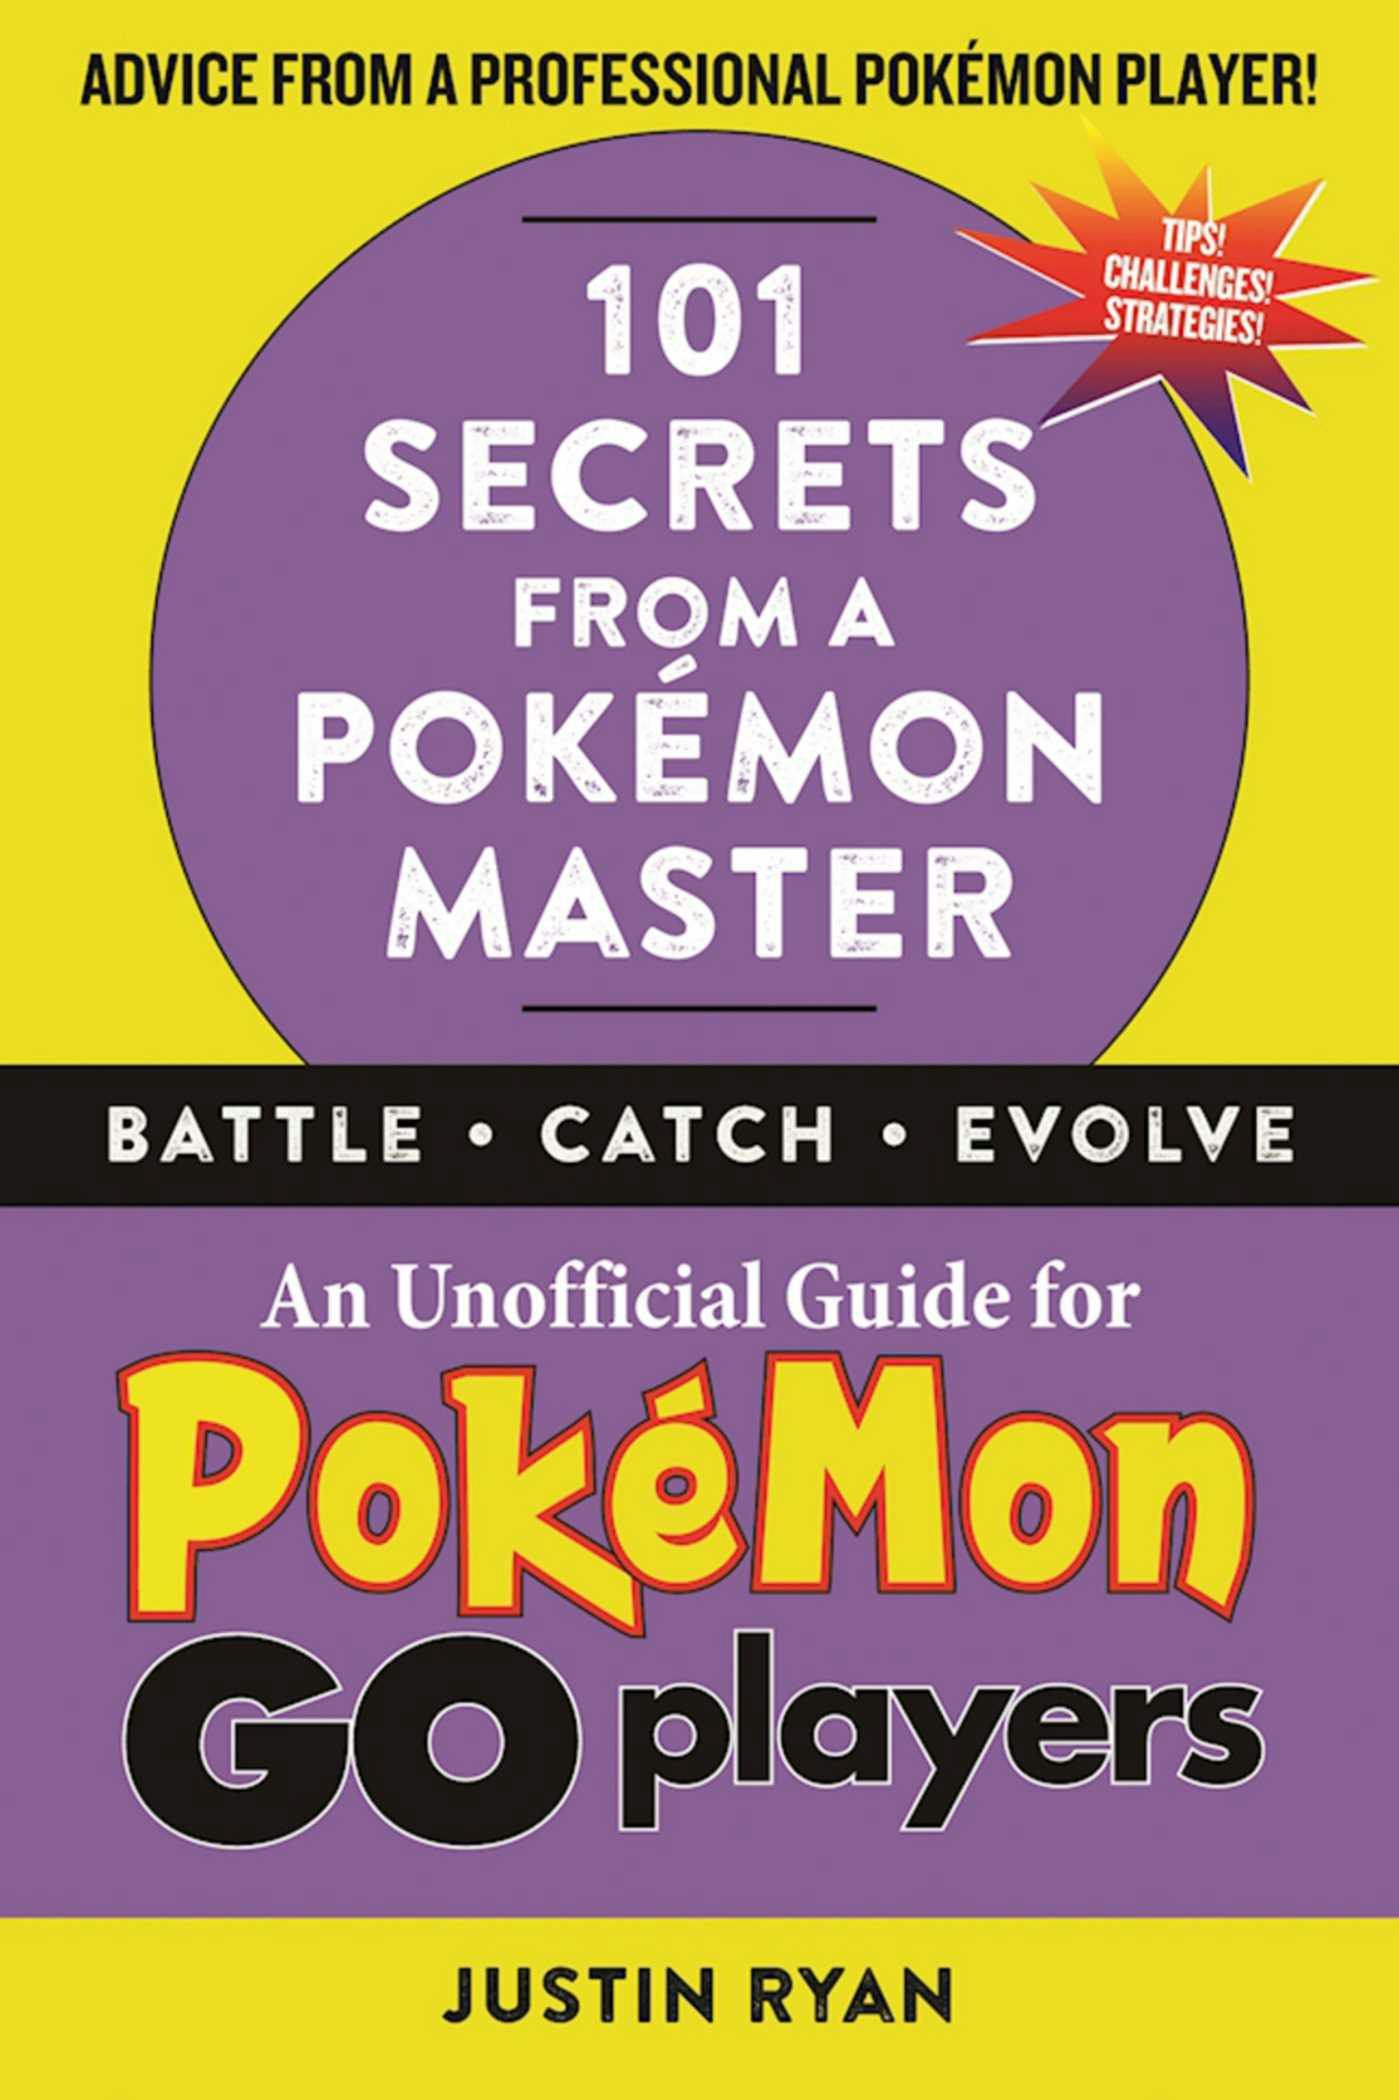 101 Secrets from a Pokémon Master - Justin Ryan